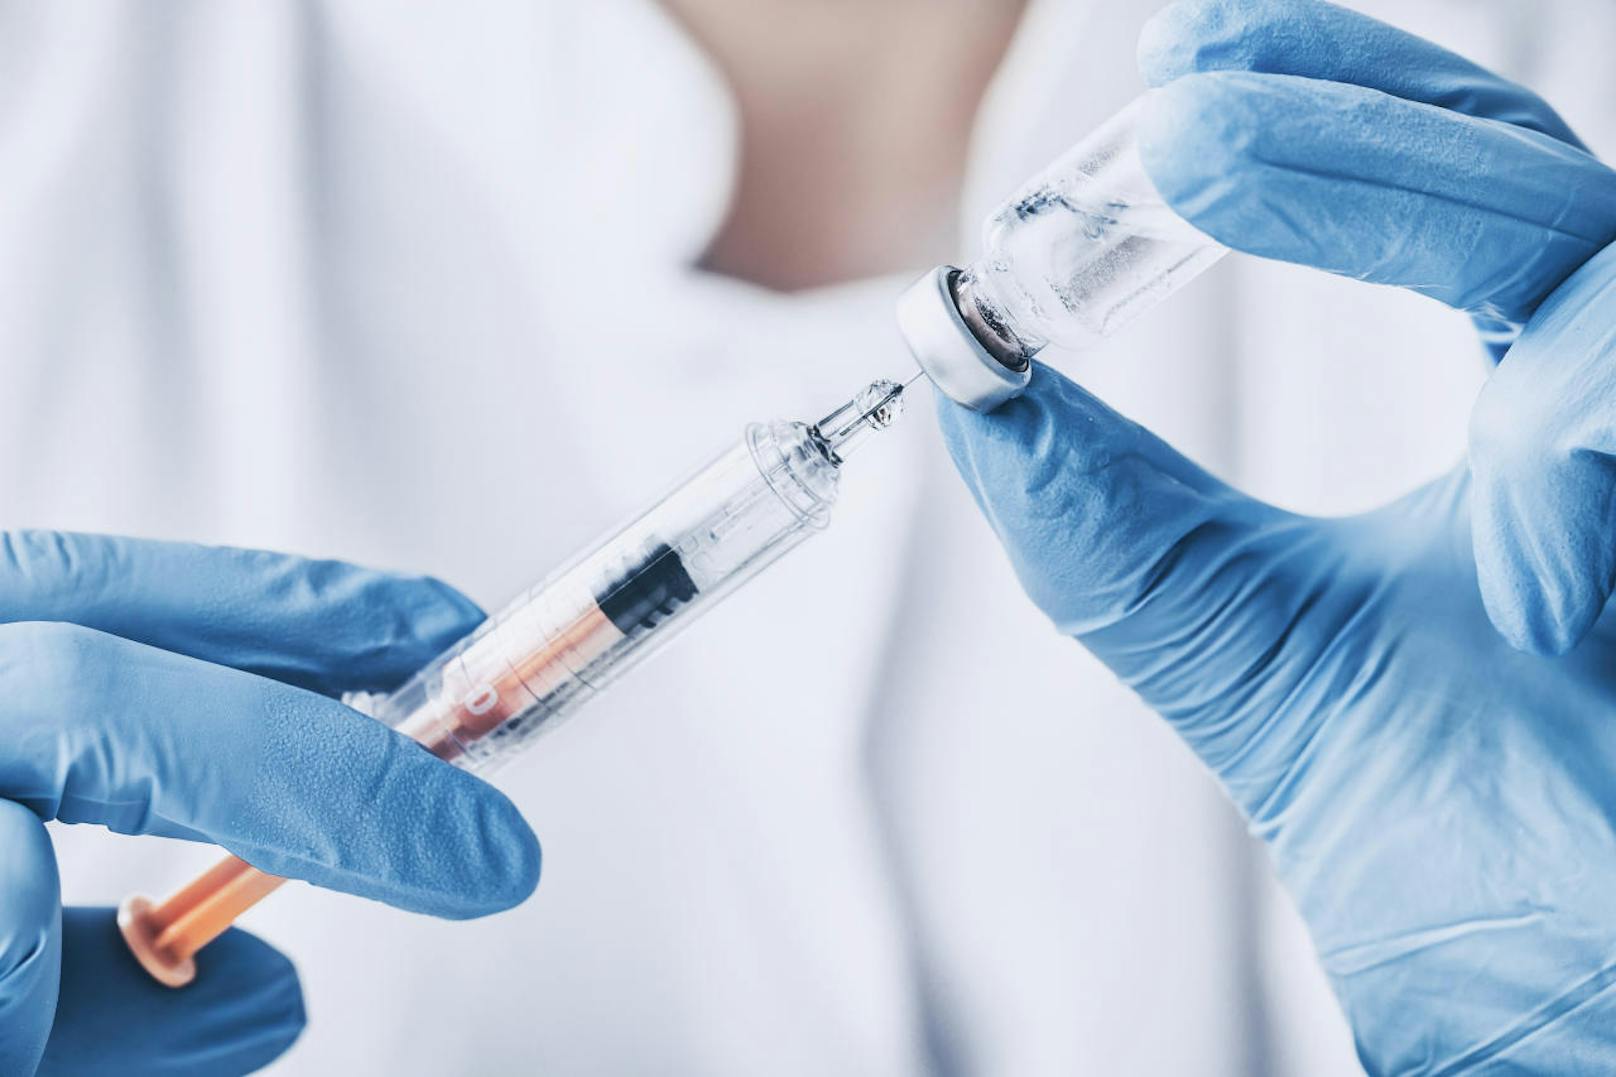 Forscher wollen freiwillige Testpersonen mit dem Coronavirus inifzieren, um die Impfstoffentwicklung voranzutreiben.<br>